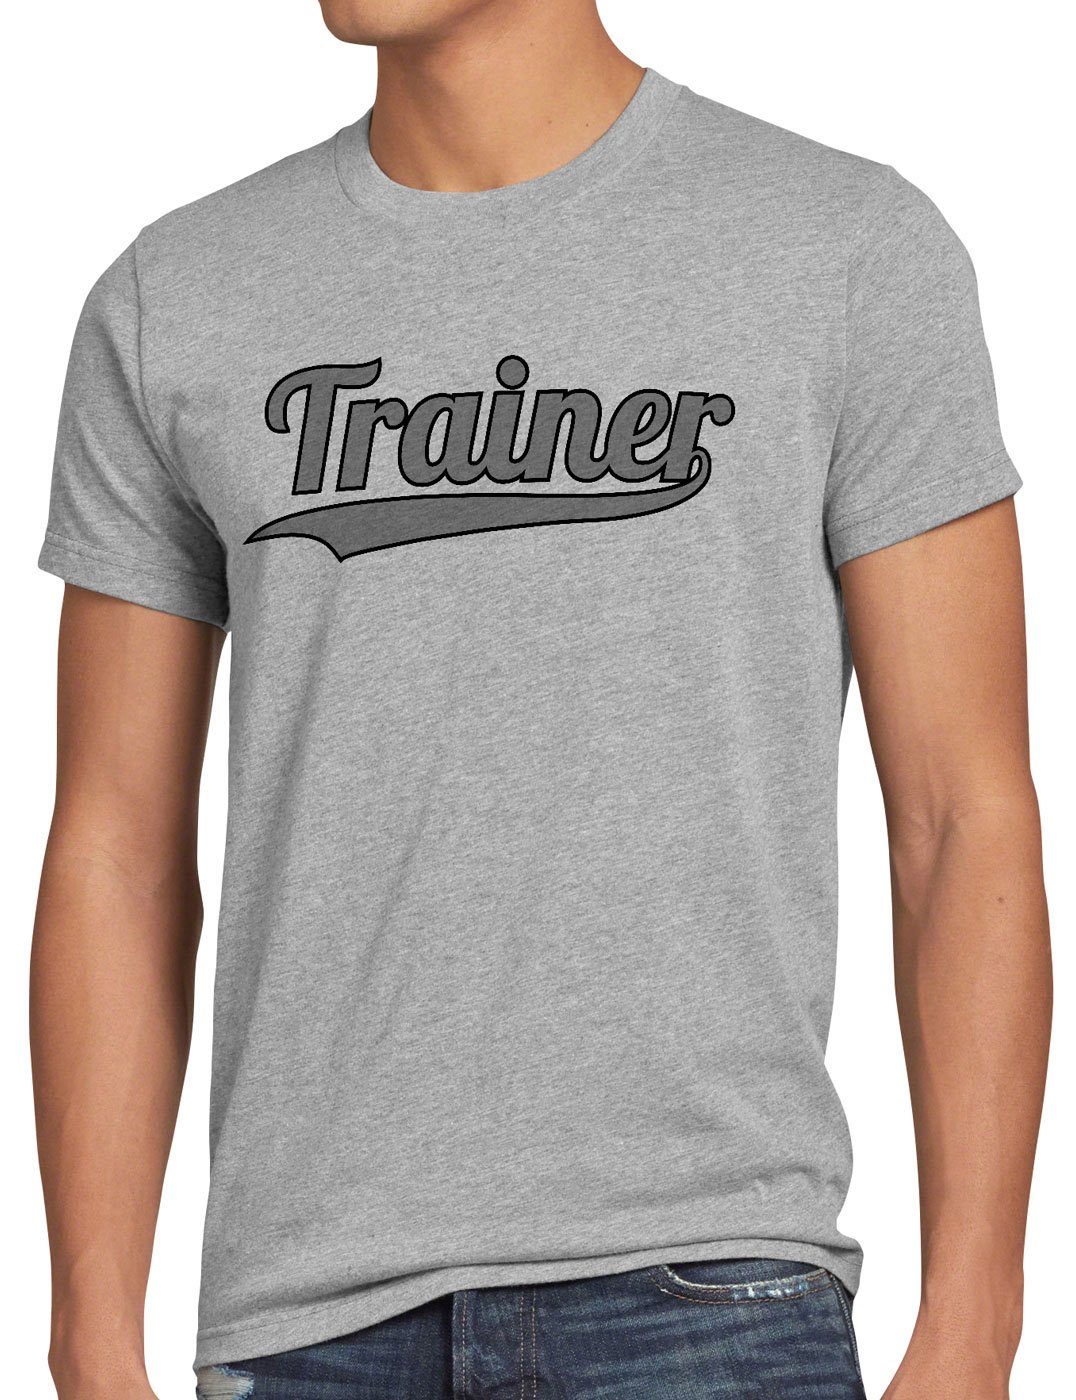 style3 Print-Shirt Herren T-Shirt Trainer Fun-shirt Coach Spruch-shirt Mannschaft Sport Fussball grau meliert